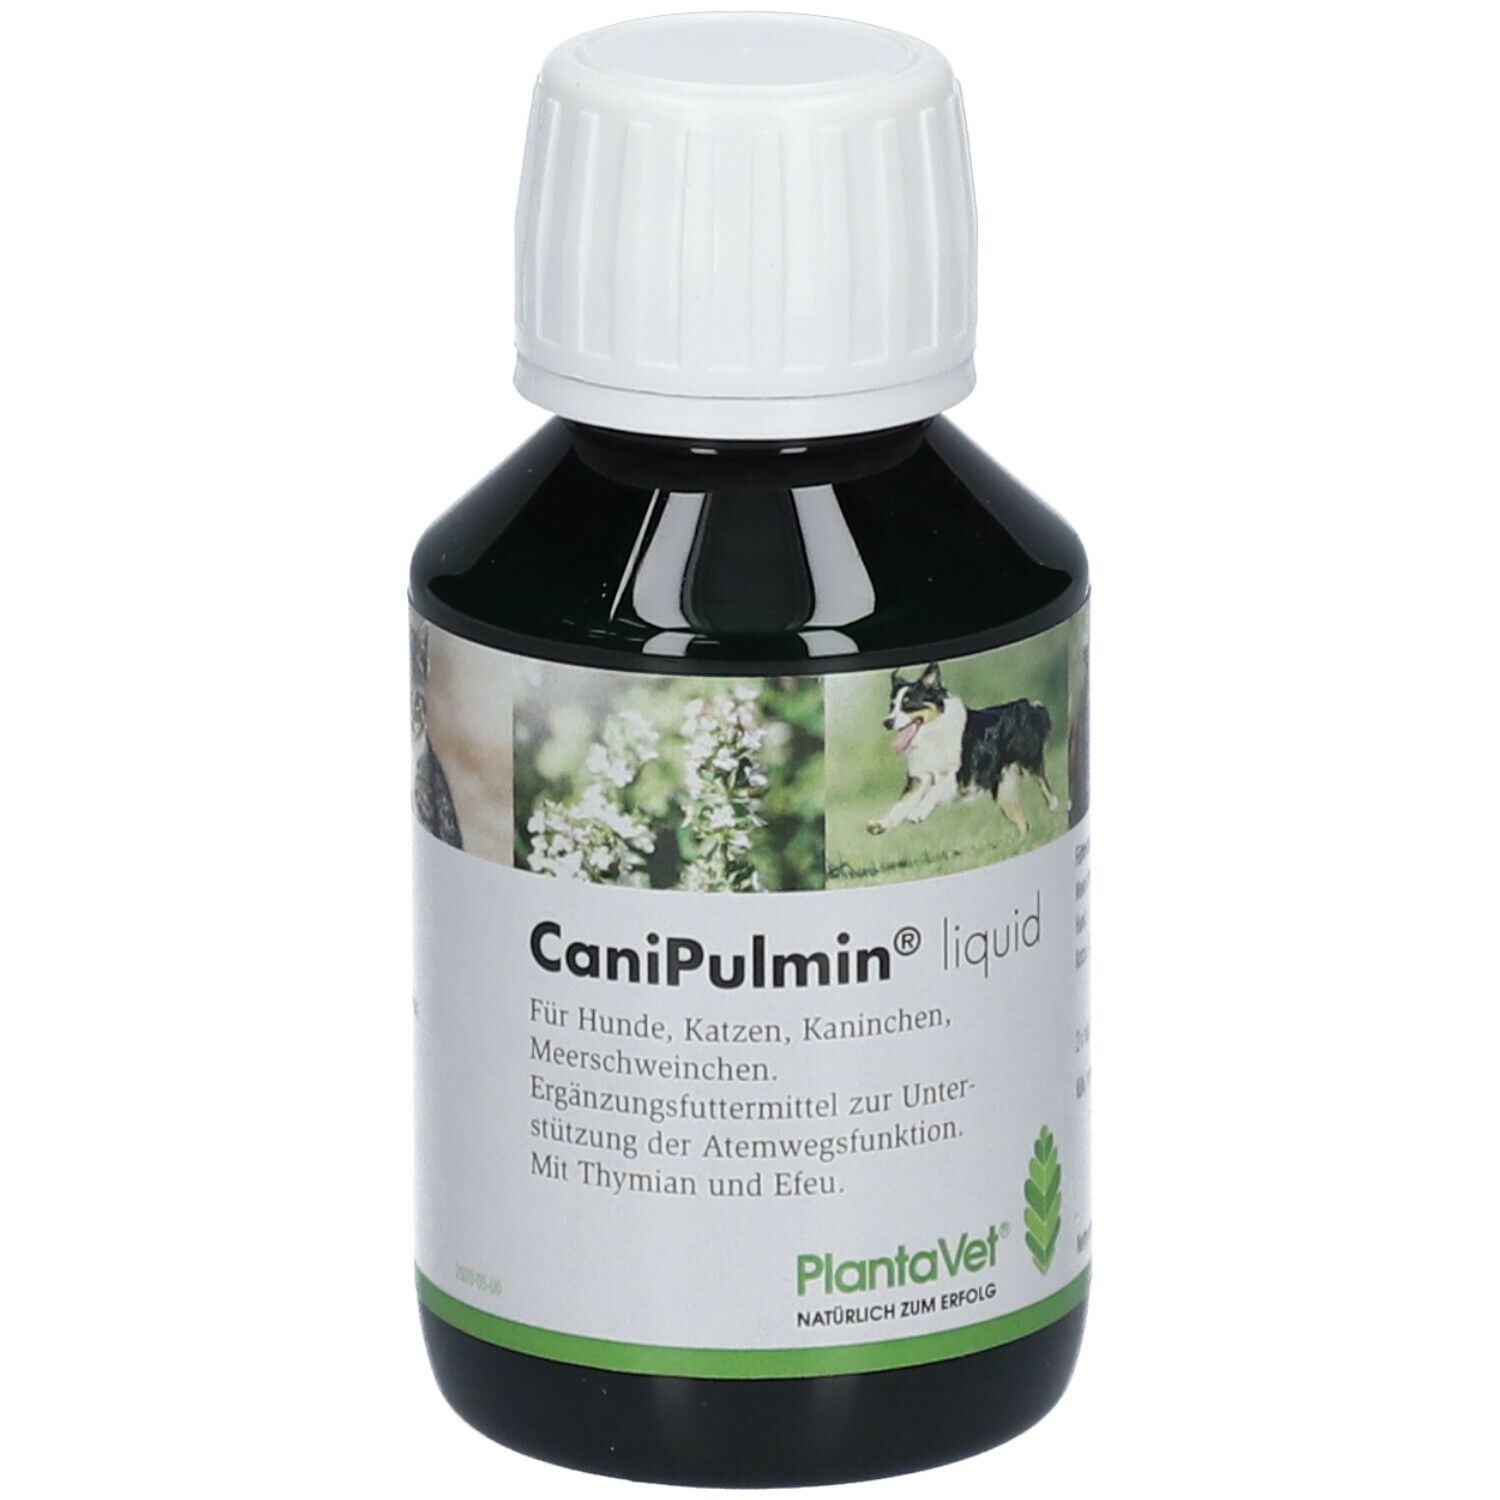 Image of CaniPulmin liquid